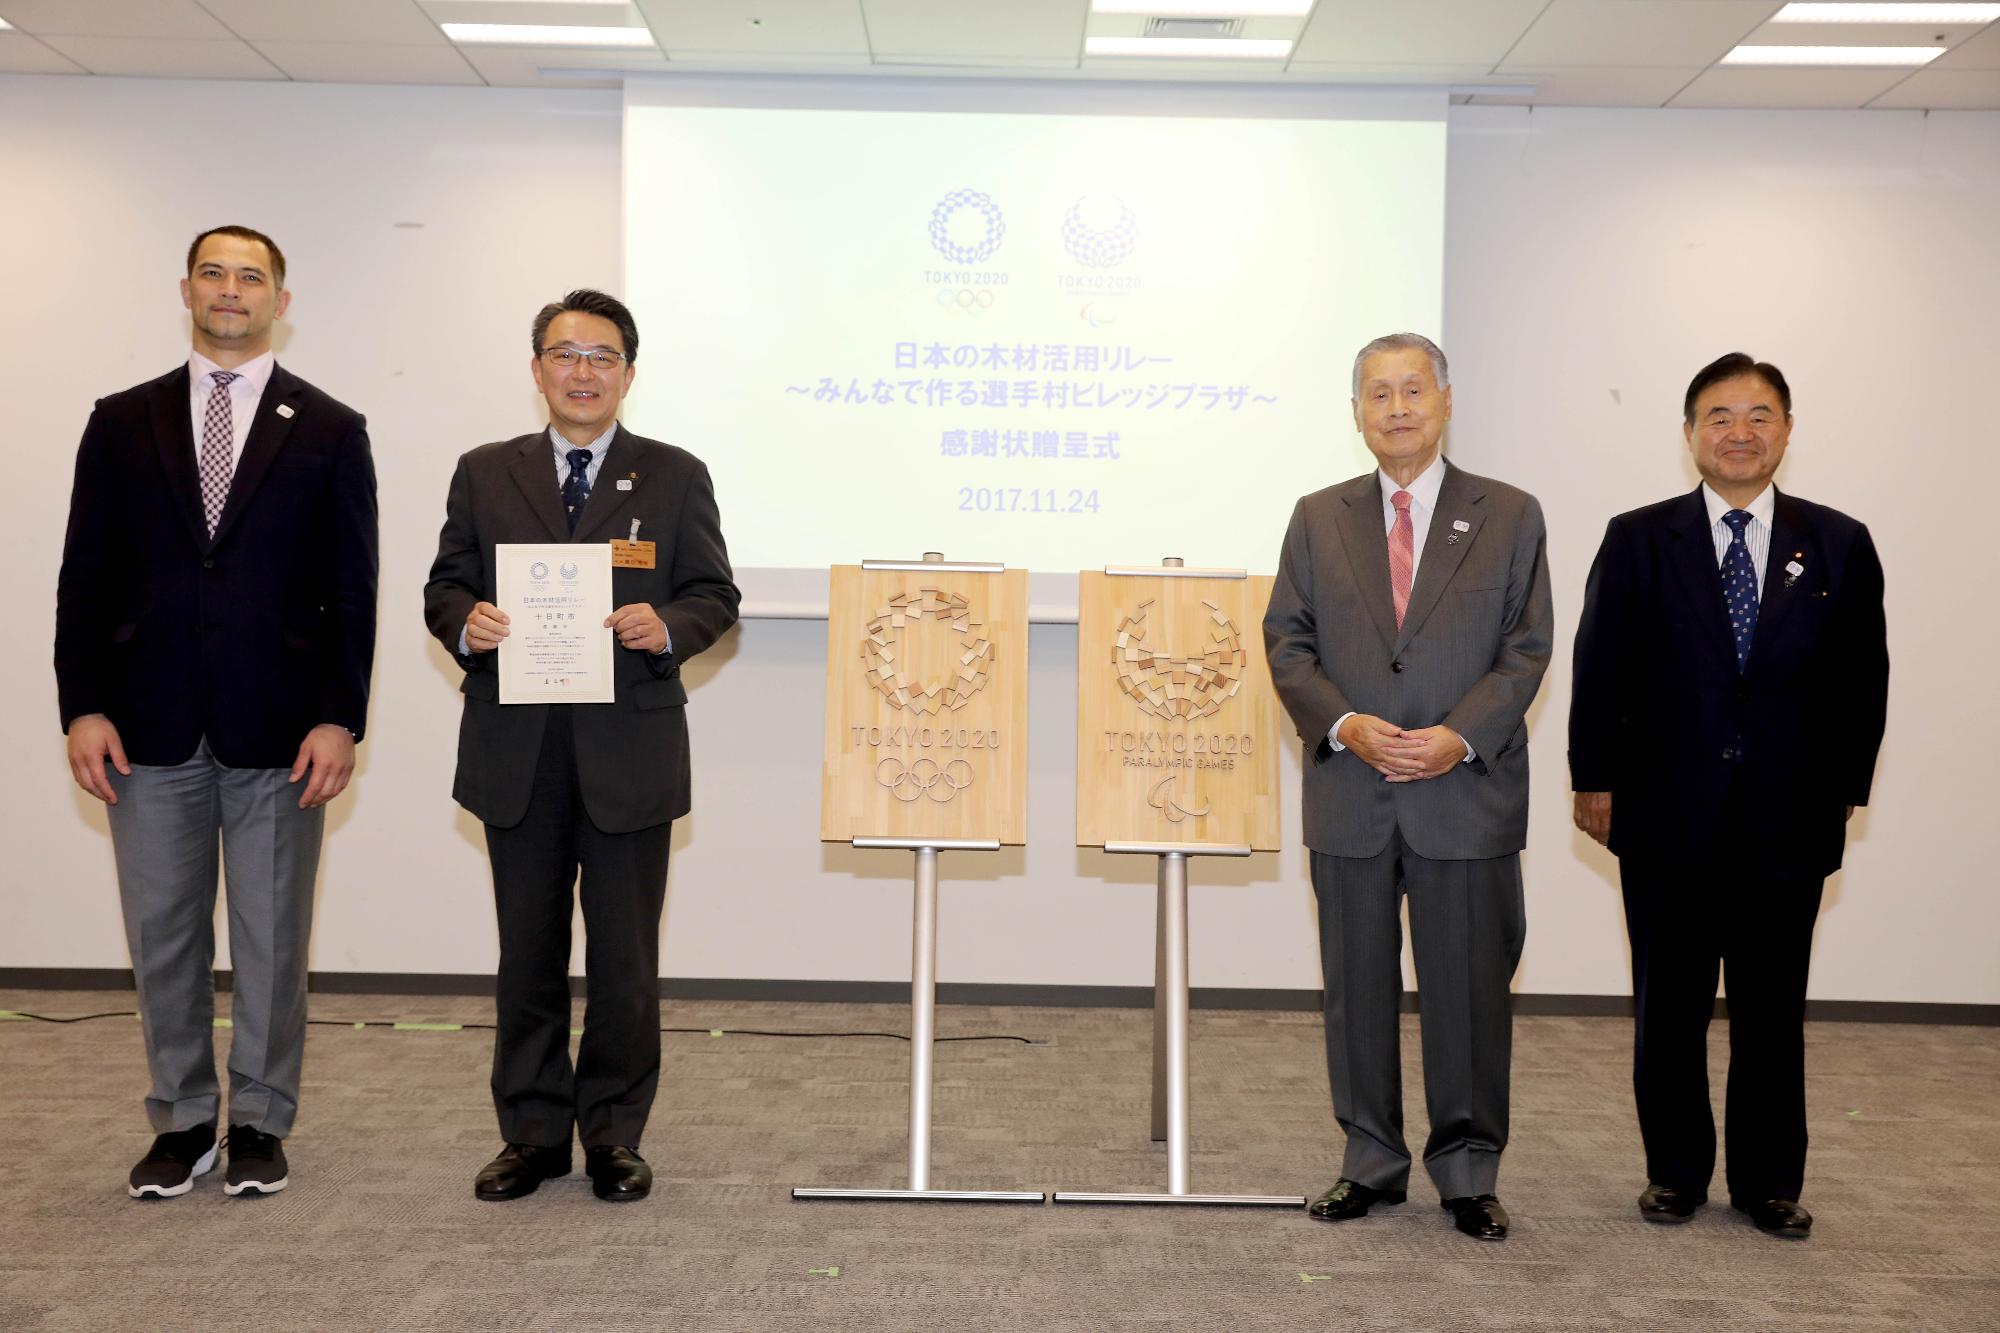 2017.11.24に東京2020組織委員会で行われた市産木材贈呈式の写真